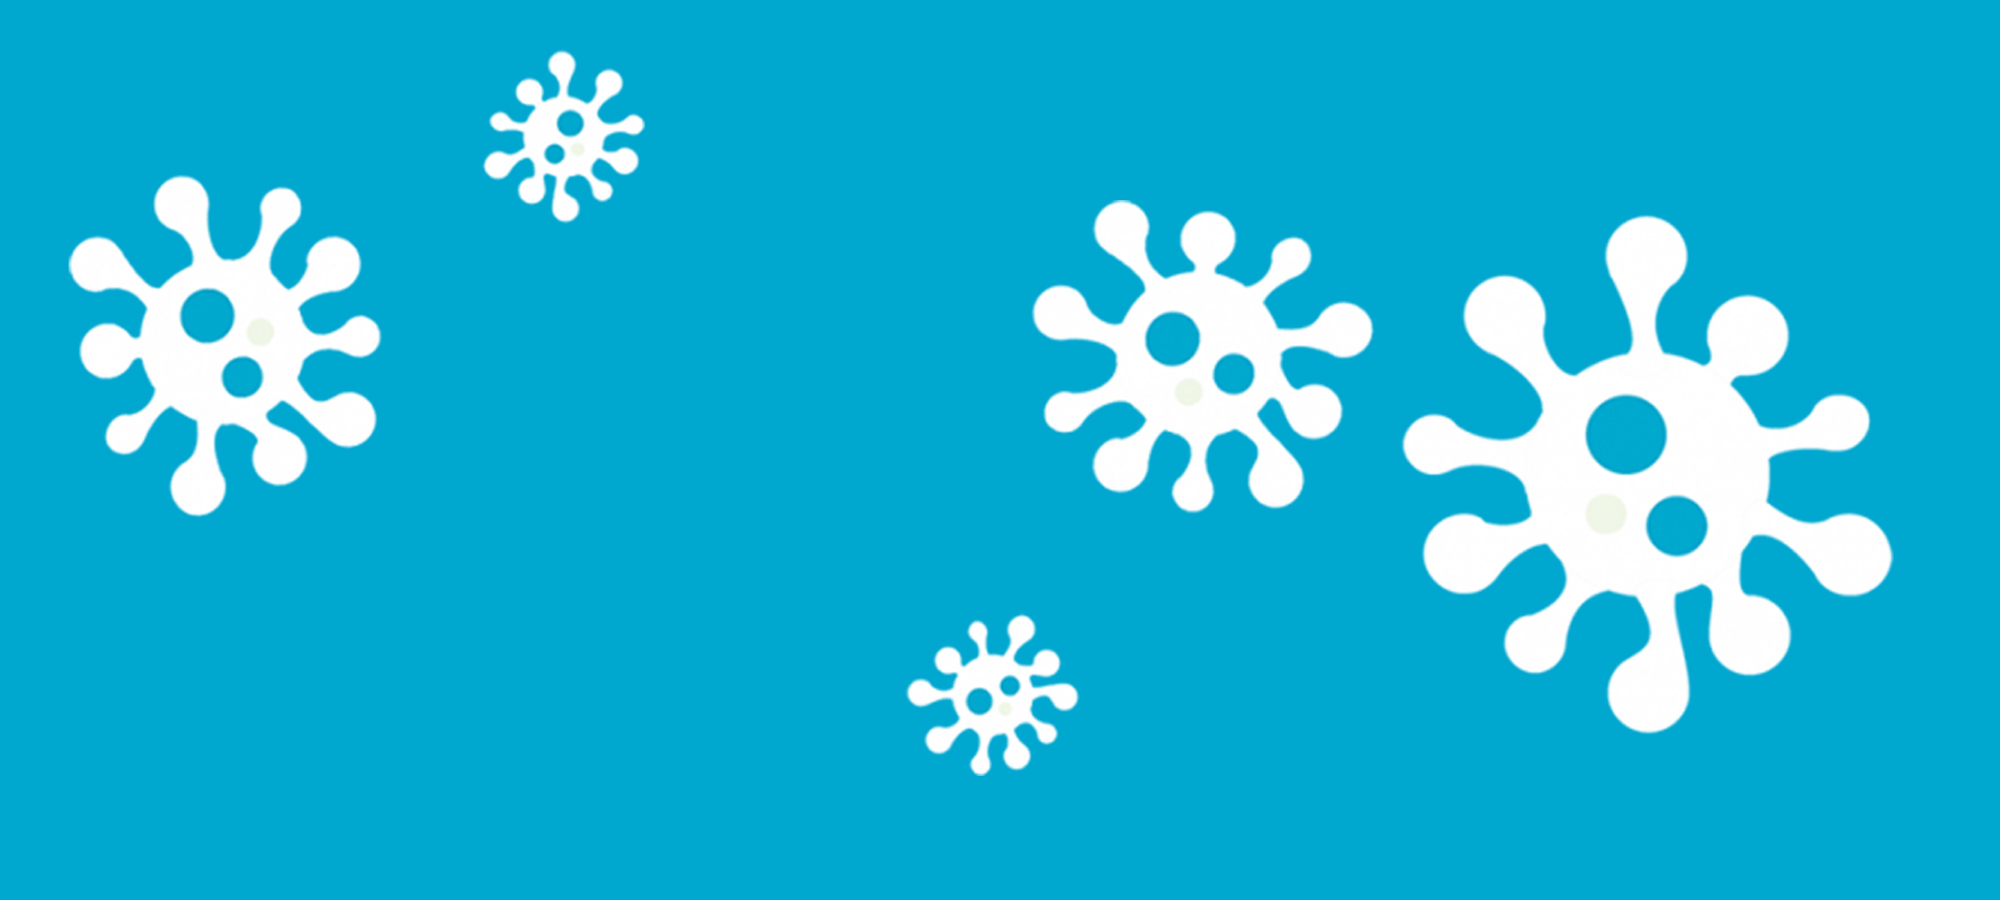 Illustrations blanches de virus sur fond bleu